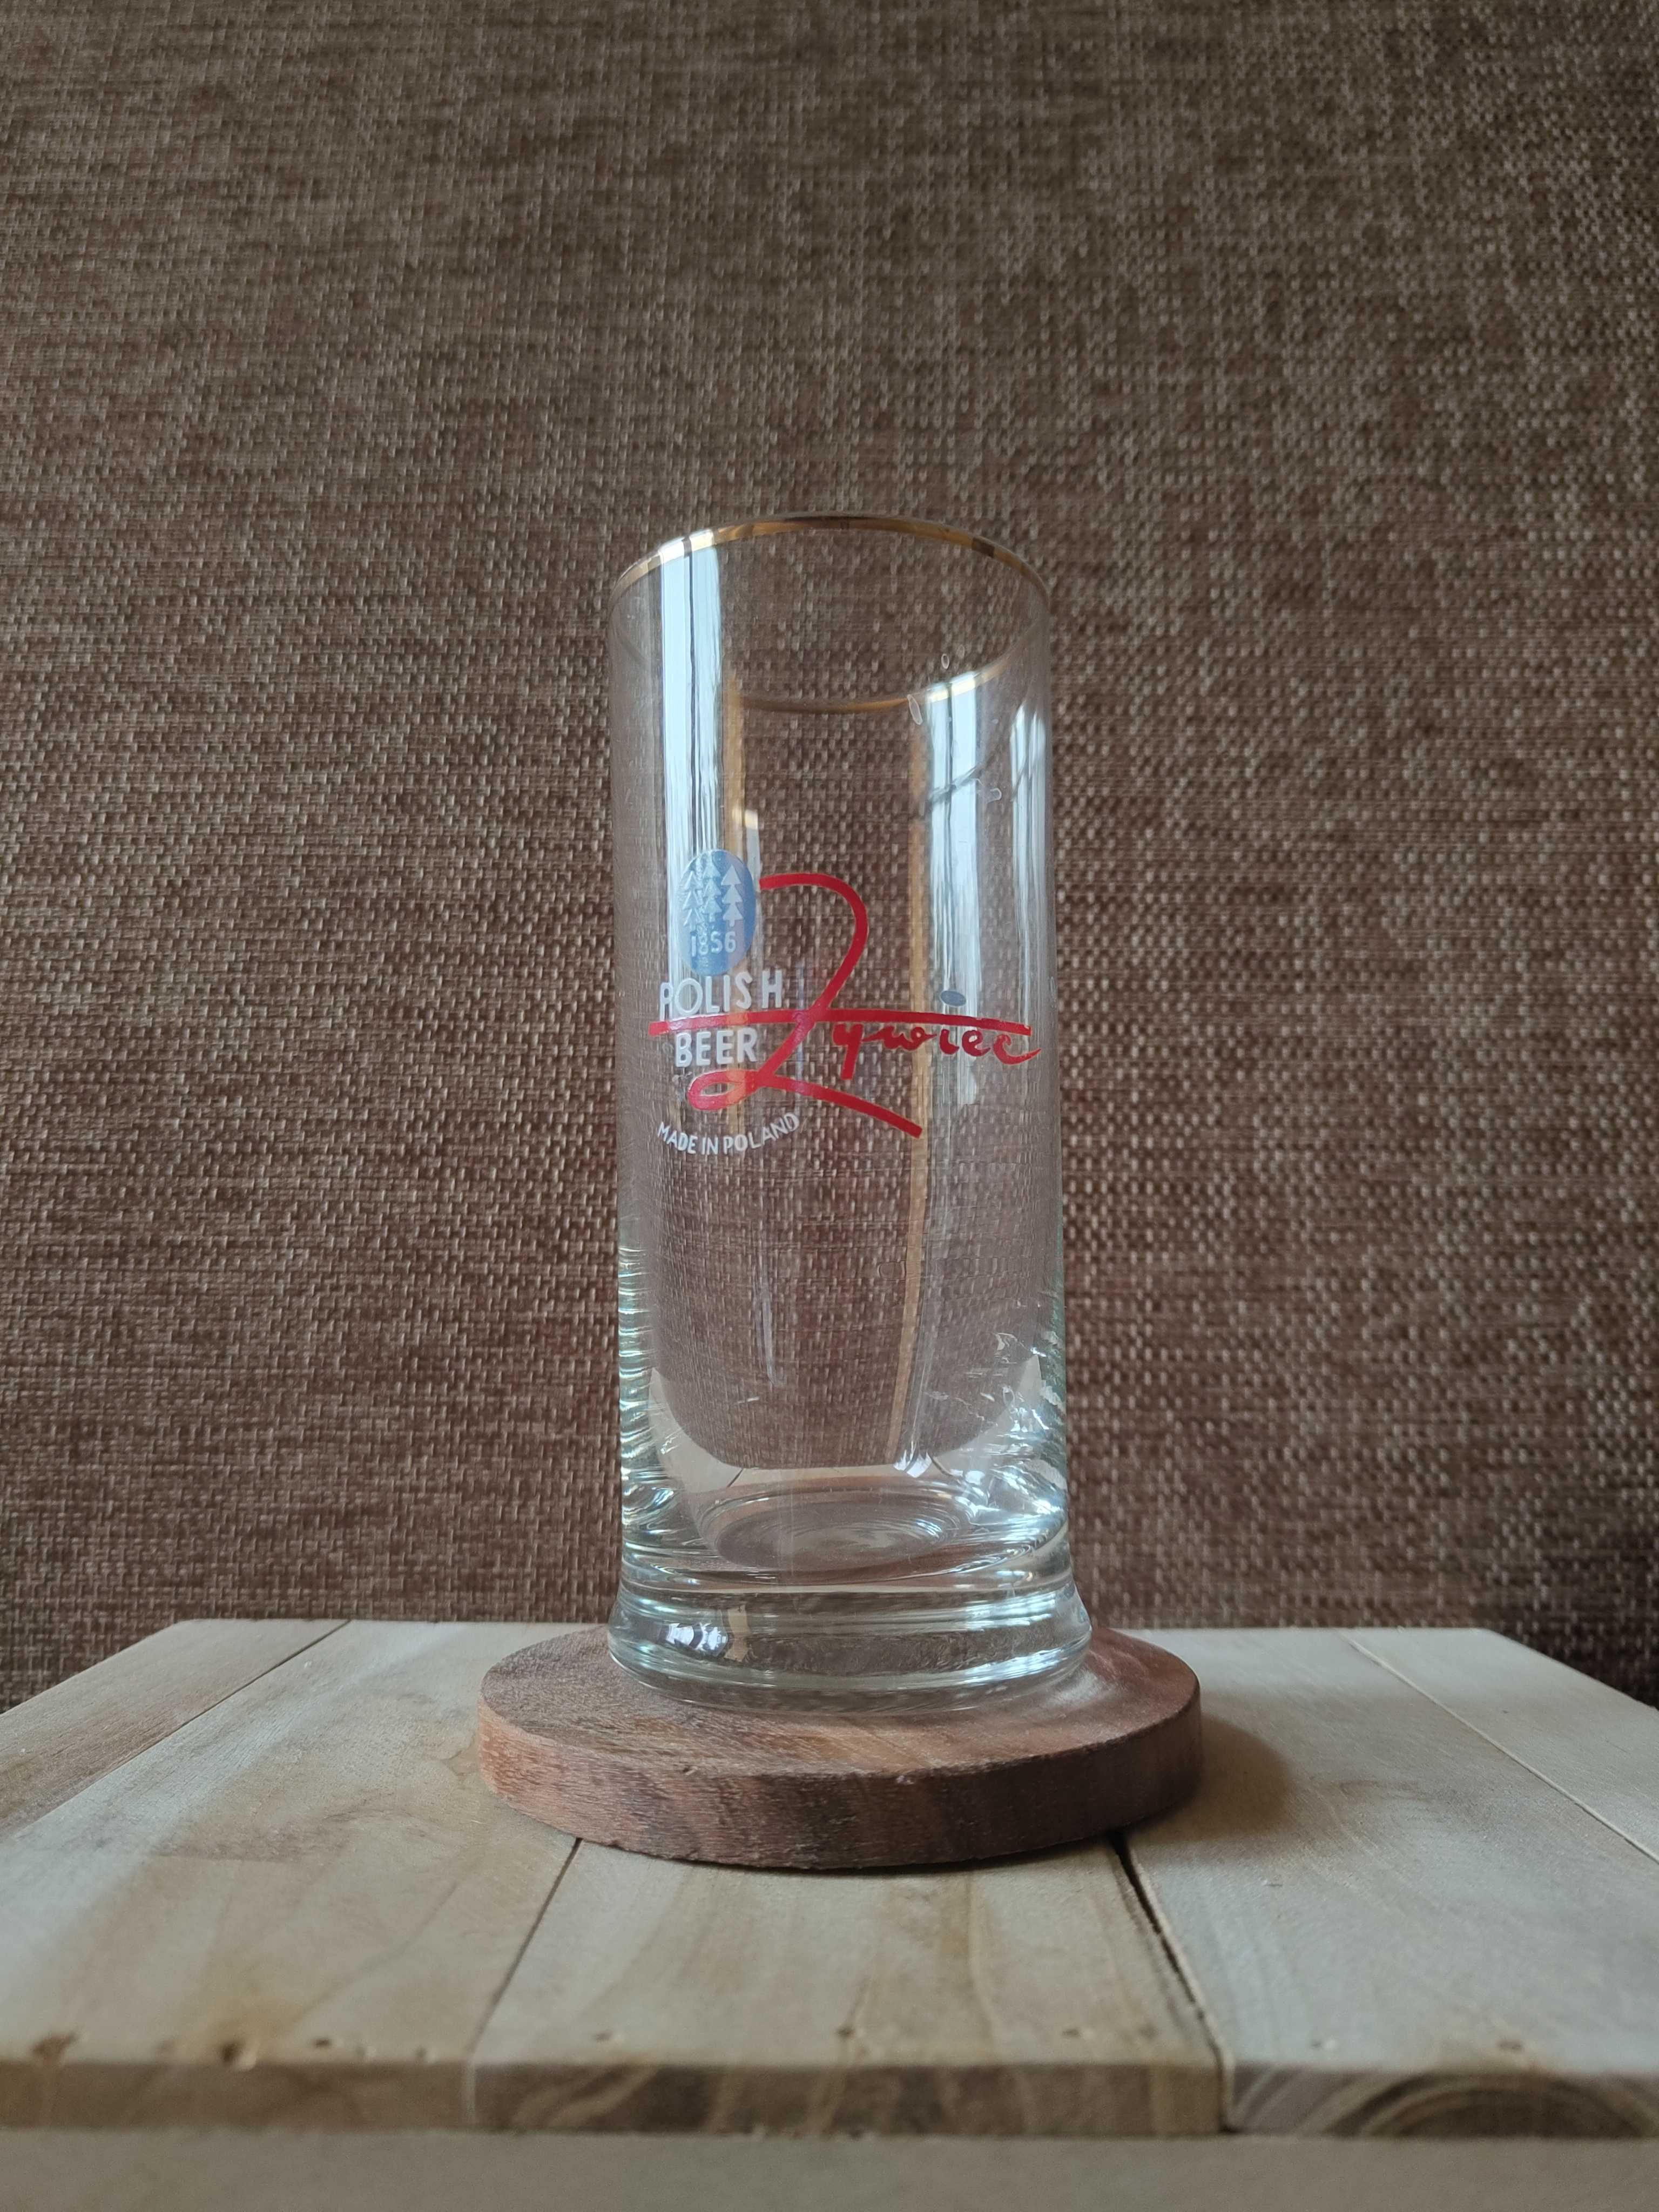 Szklanka do piwa Polish Beer Żywiec, 0.3L, stan idealny